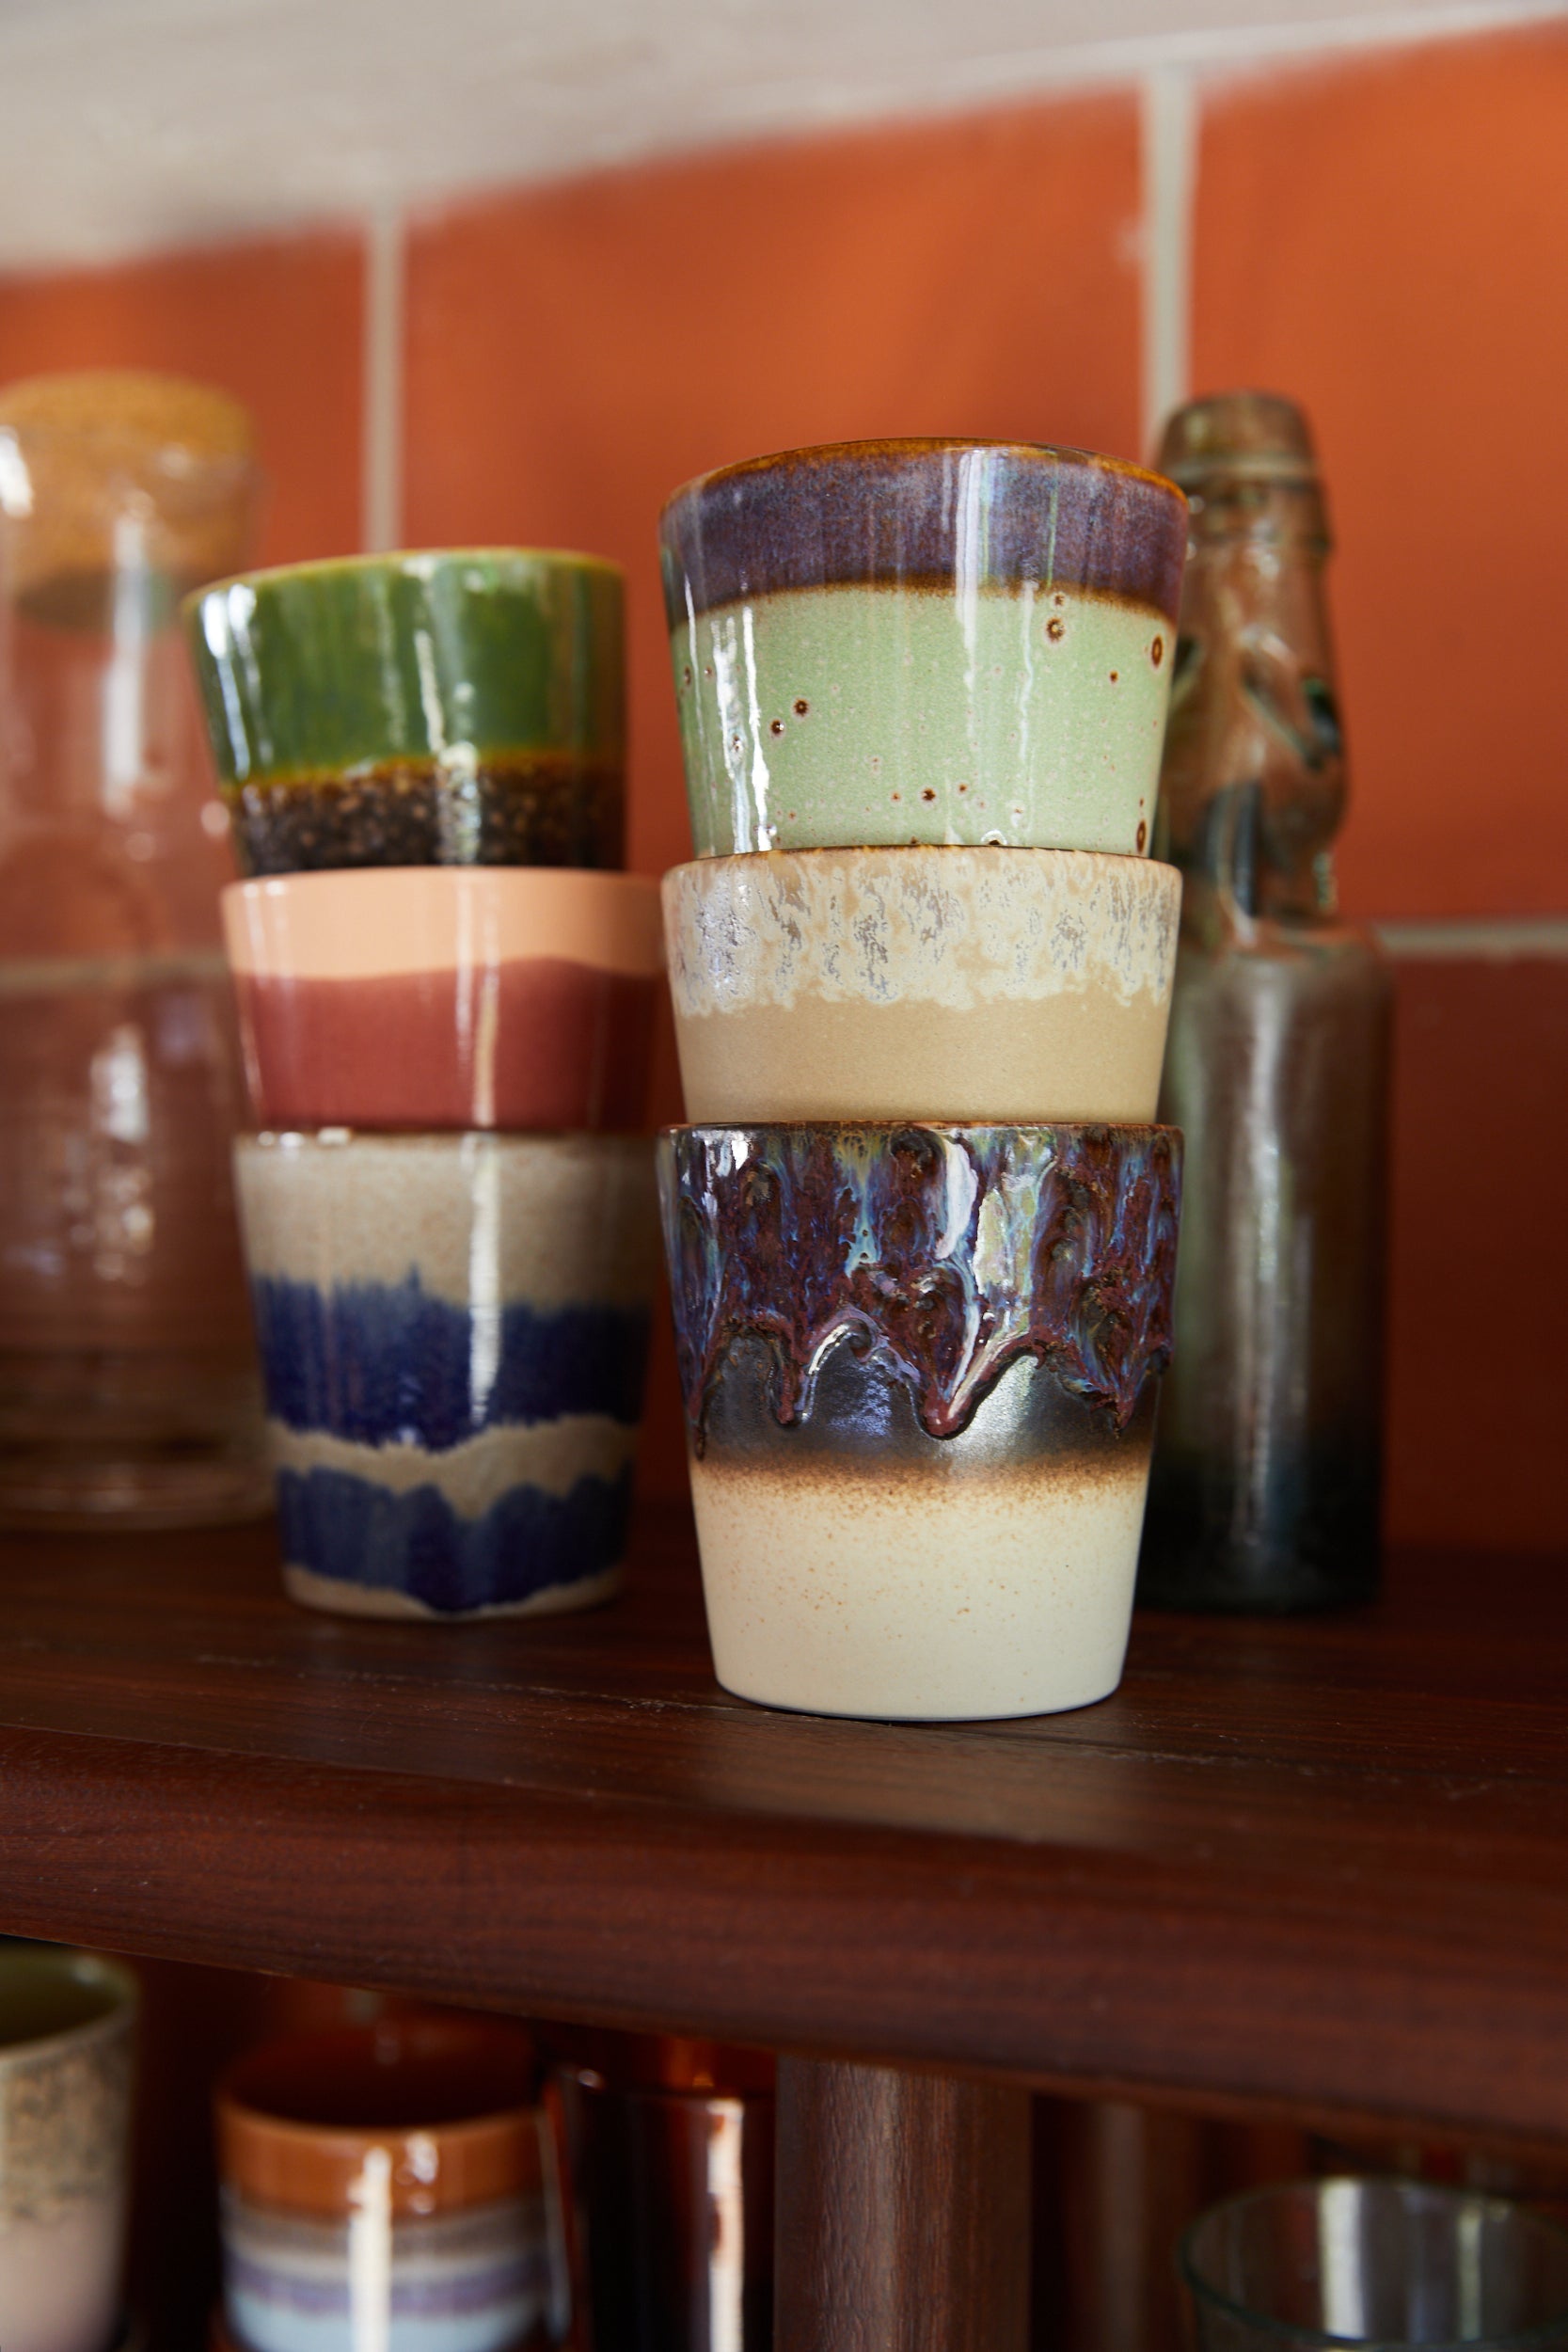 70s ceramics: coffee mug, aurora